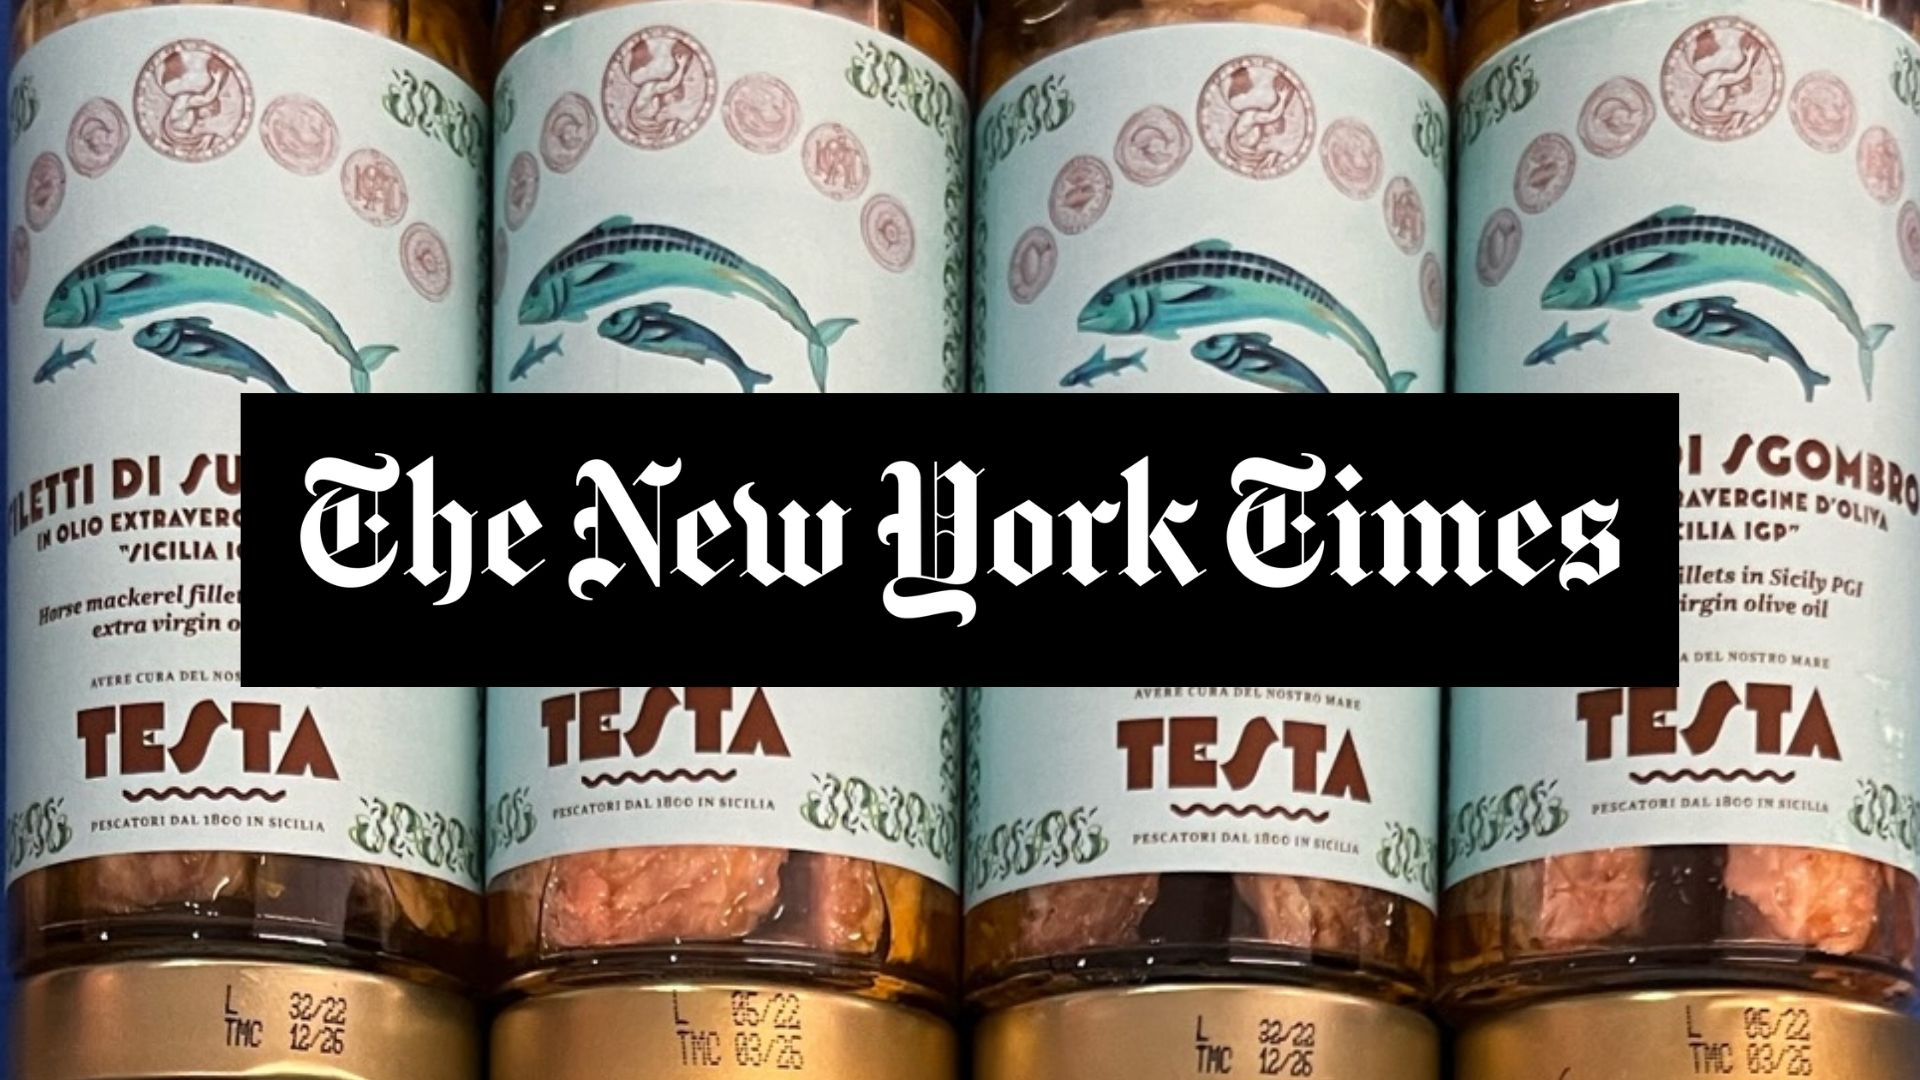 New York Times testa conserve sgombro sugarello mackerel